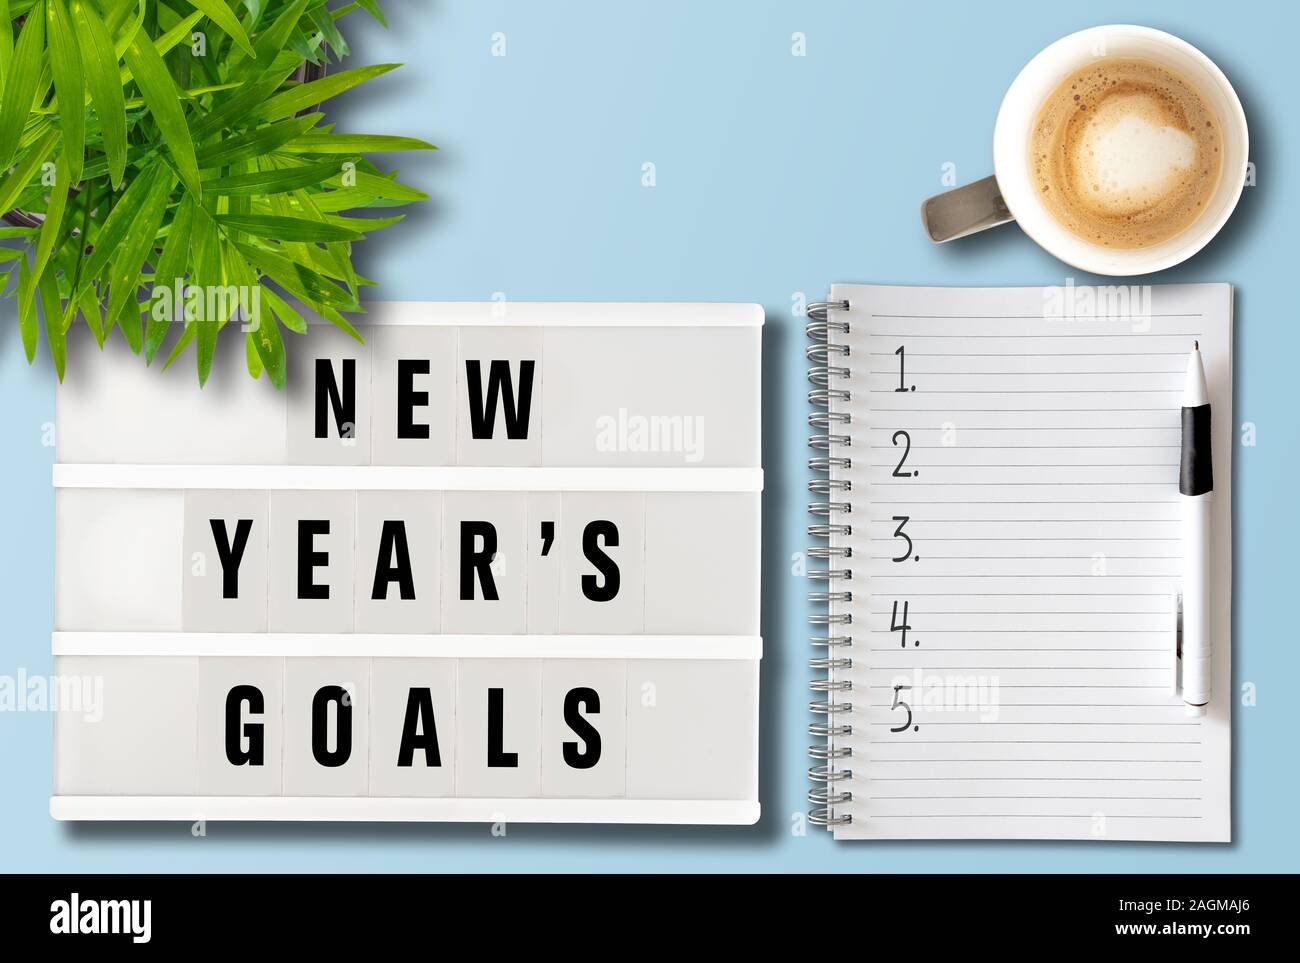 Objetivos o resoluciones de año nuevo concepto con vista superior de lightbox y bloc de notas en el escritorio Foto de stock